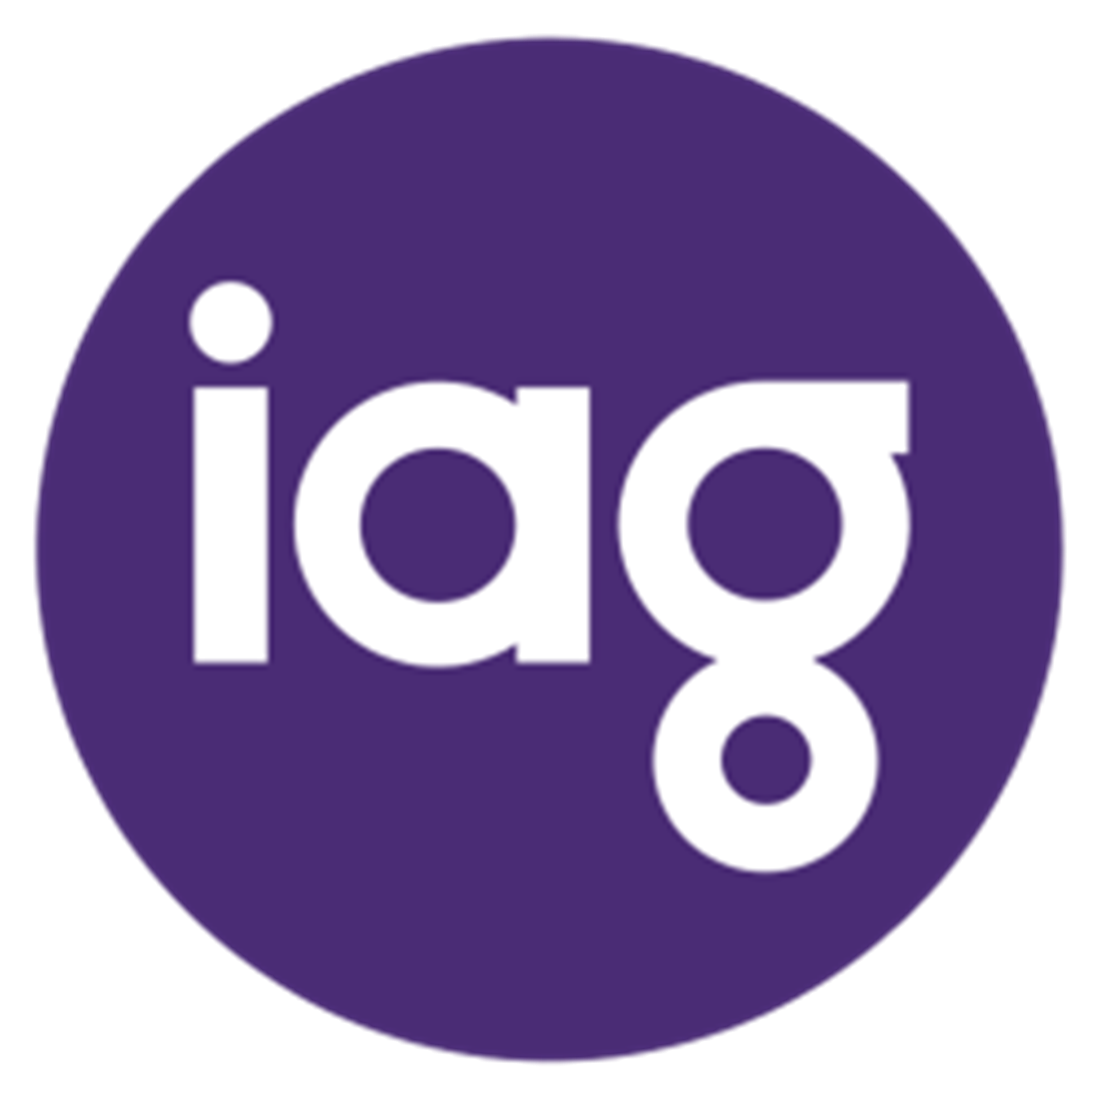 iag logo